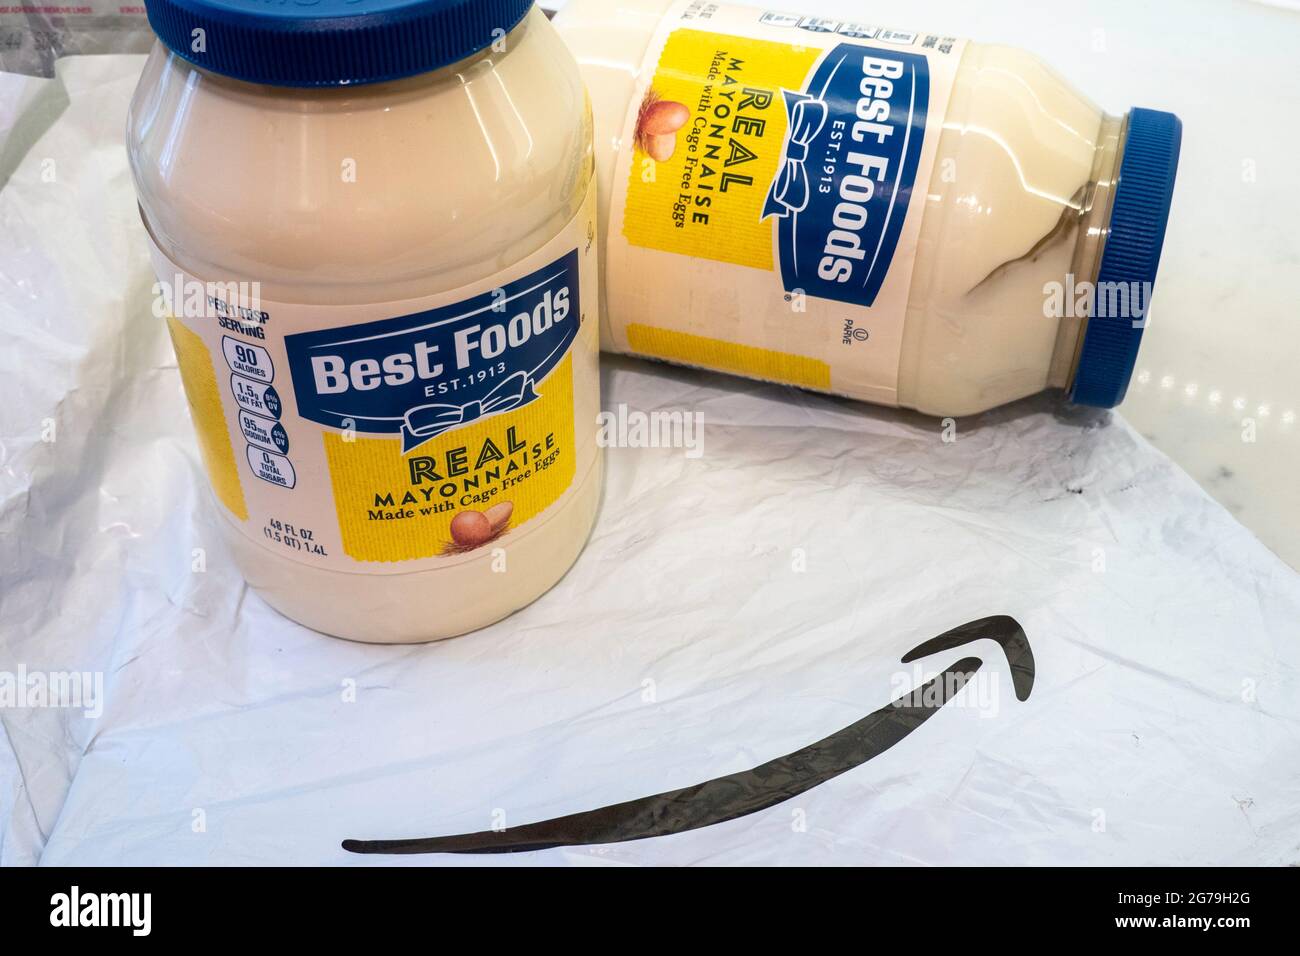 Vasetti di maionese Best Foods consegnati da Amazon, USA Foto Stock